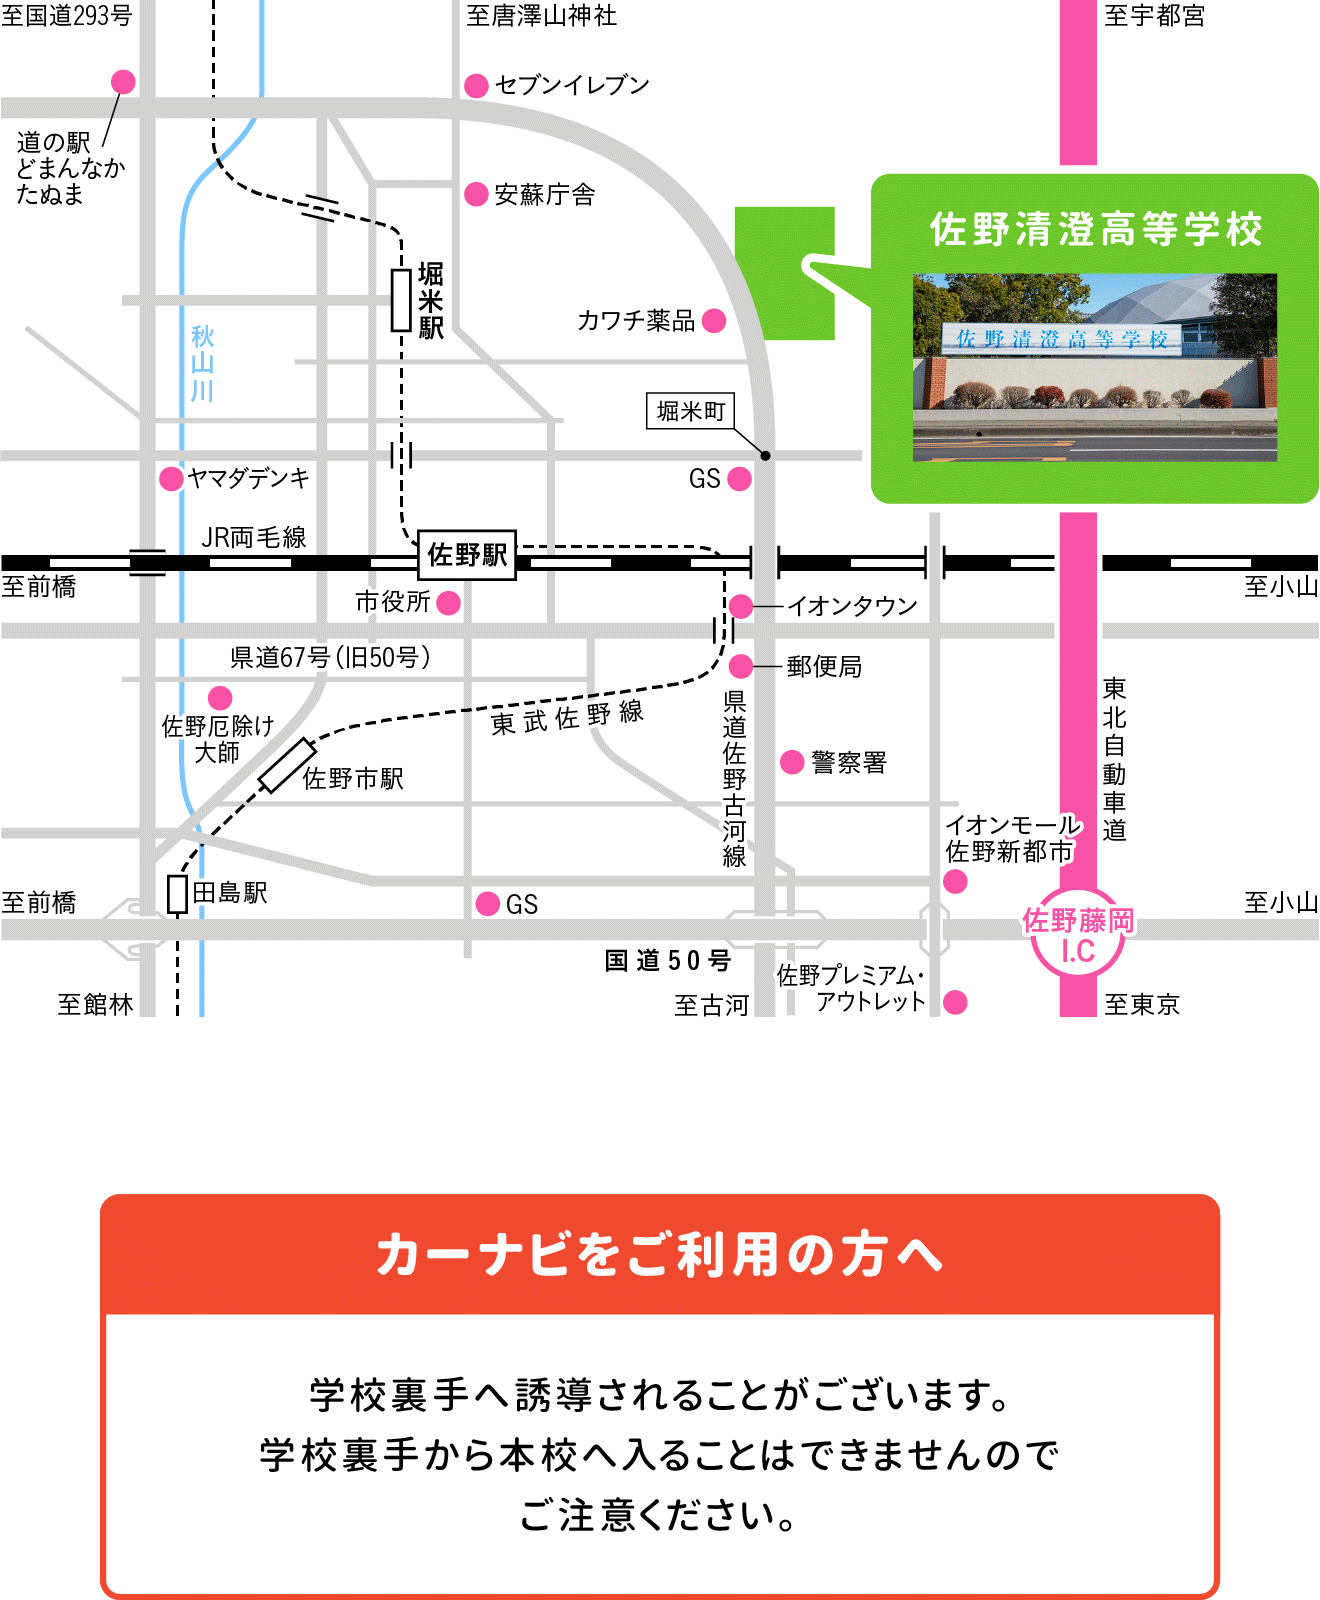 清澄高校へのアクセスマップ